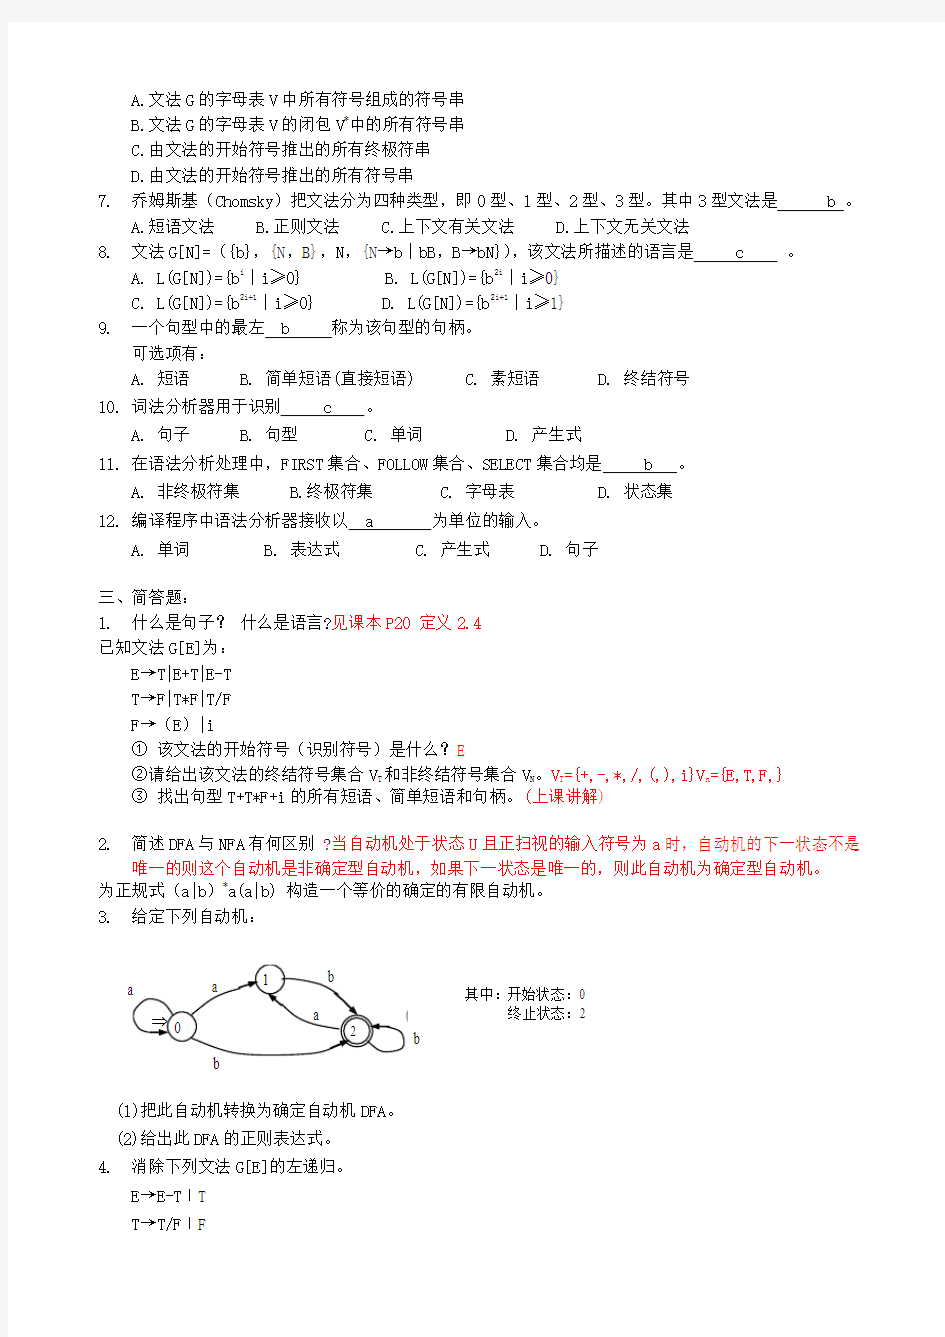 嘉兴学院08-09编译原理期中练习题答案